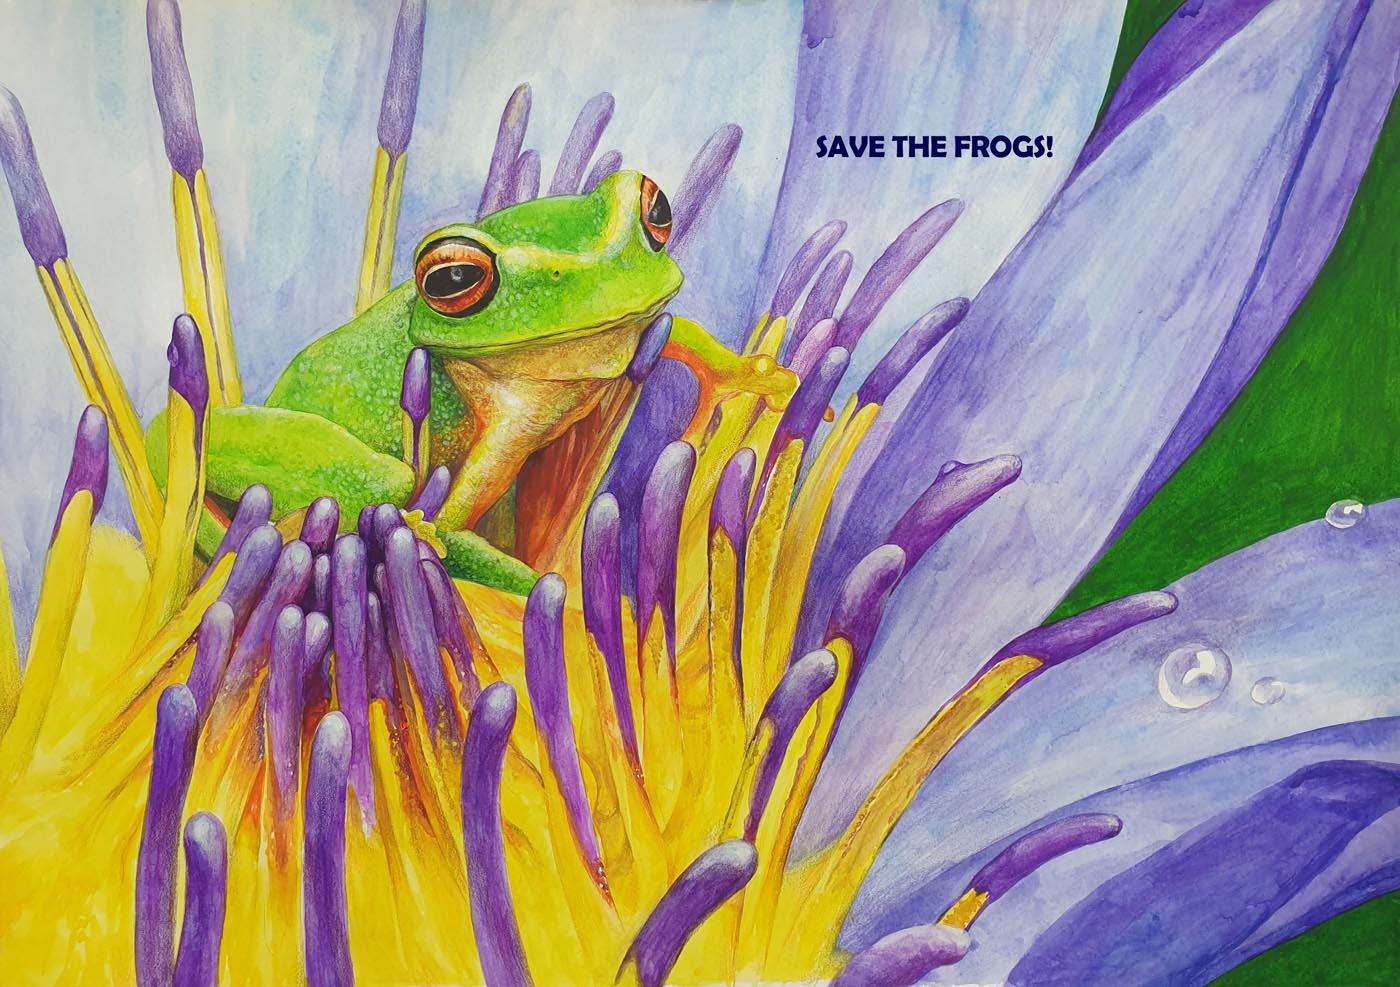 이현서-대한민국-2021-save-the-frogs-art-contest 2nd Place Winner